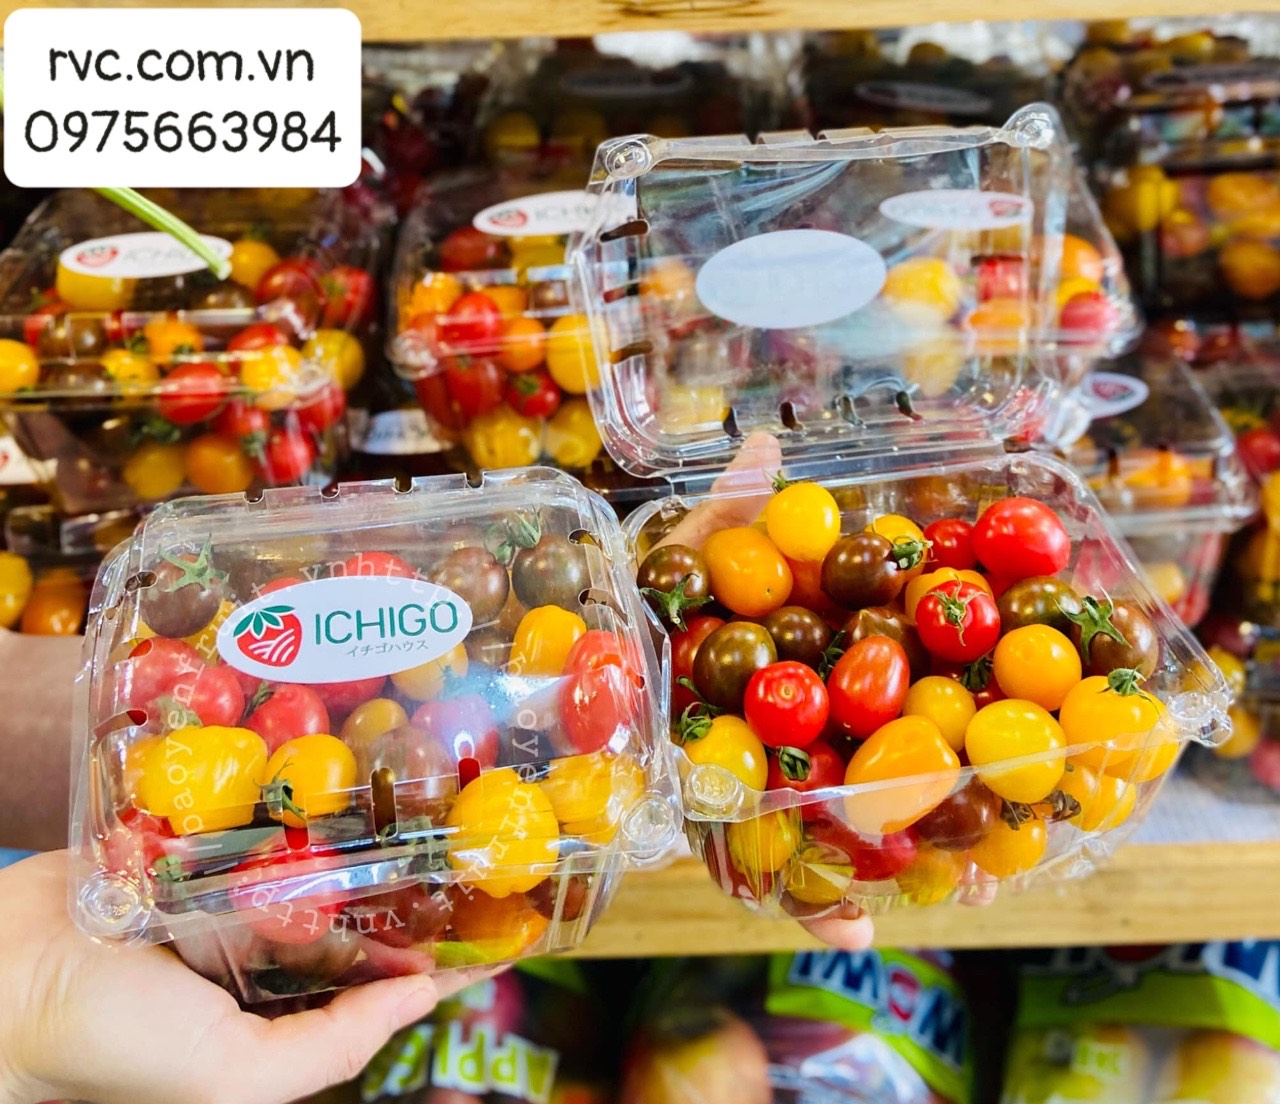 Gợi ý mẫu hộp nhựa trái cây 500g P500D chất lượng trên thị trường.